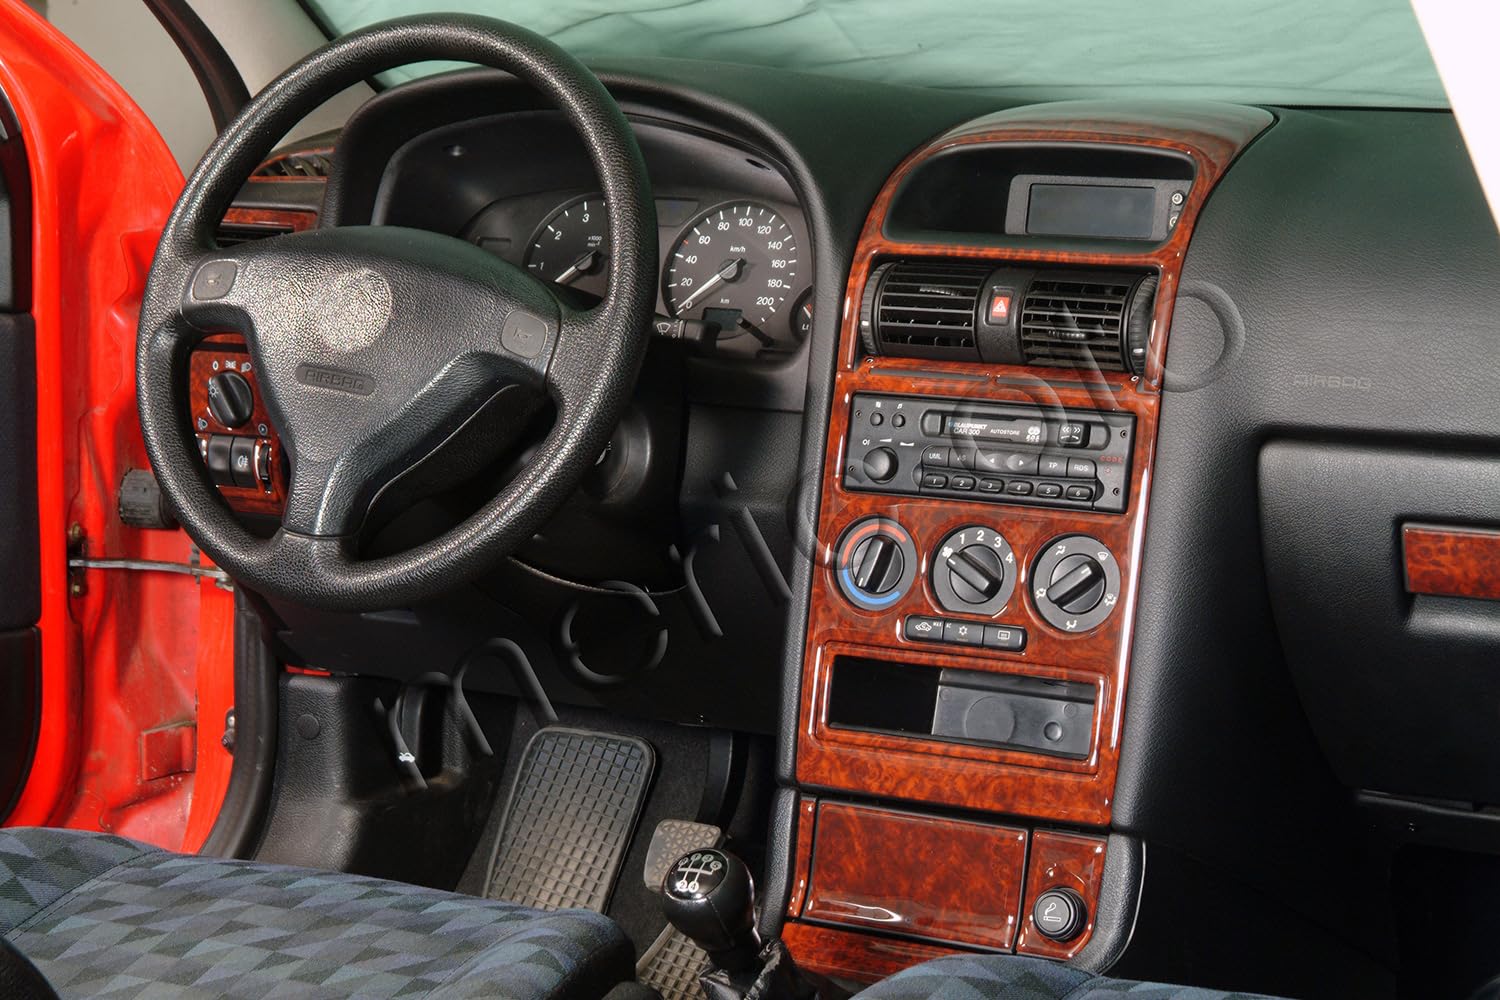 AUTOKLEIDUNG® Cockpit Dekor kompatibel mit Opel Astra G Baujahr 03/1998-12/2003 16 Teile | 3D Carbon Dark Optik von Autokleidung